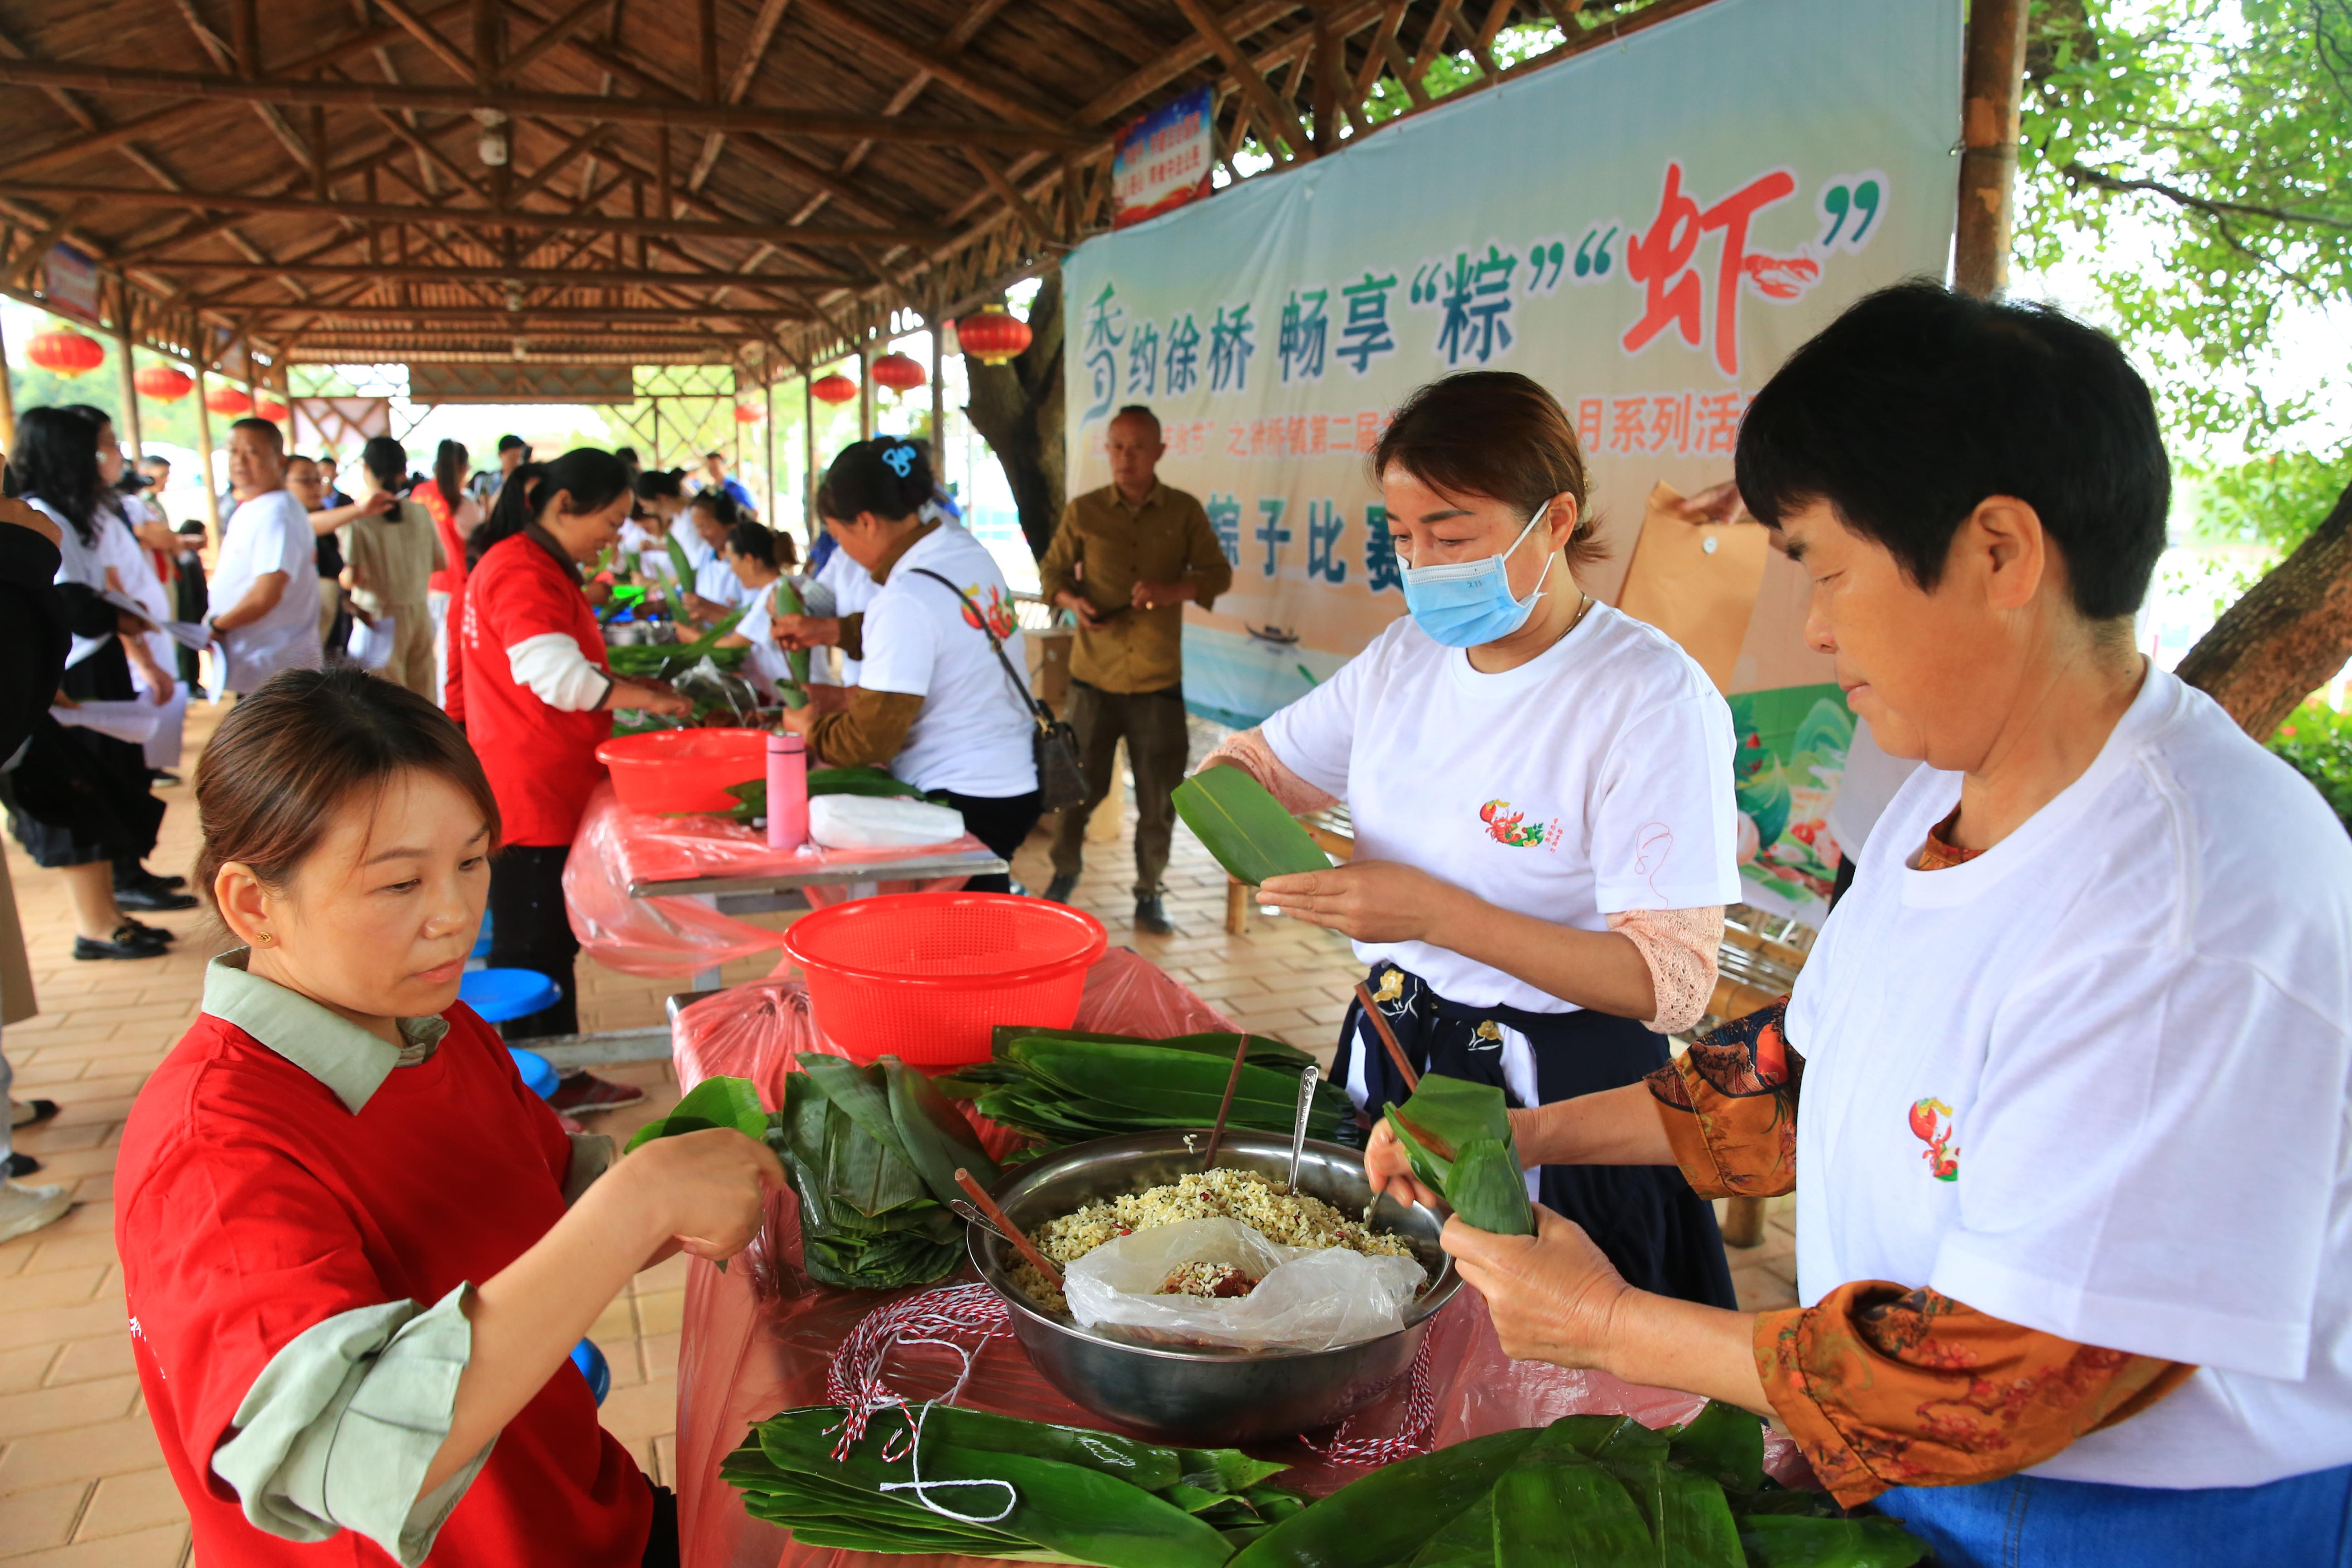 安徽省太湖县徐桥镇市民在开展包粽子比赛。在小长假期间，环比增长20.9%。各式粽子琳琅满目
，刘辉摄